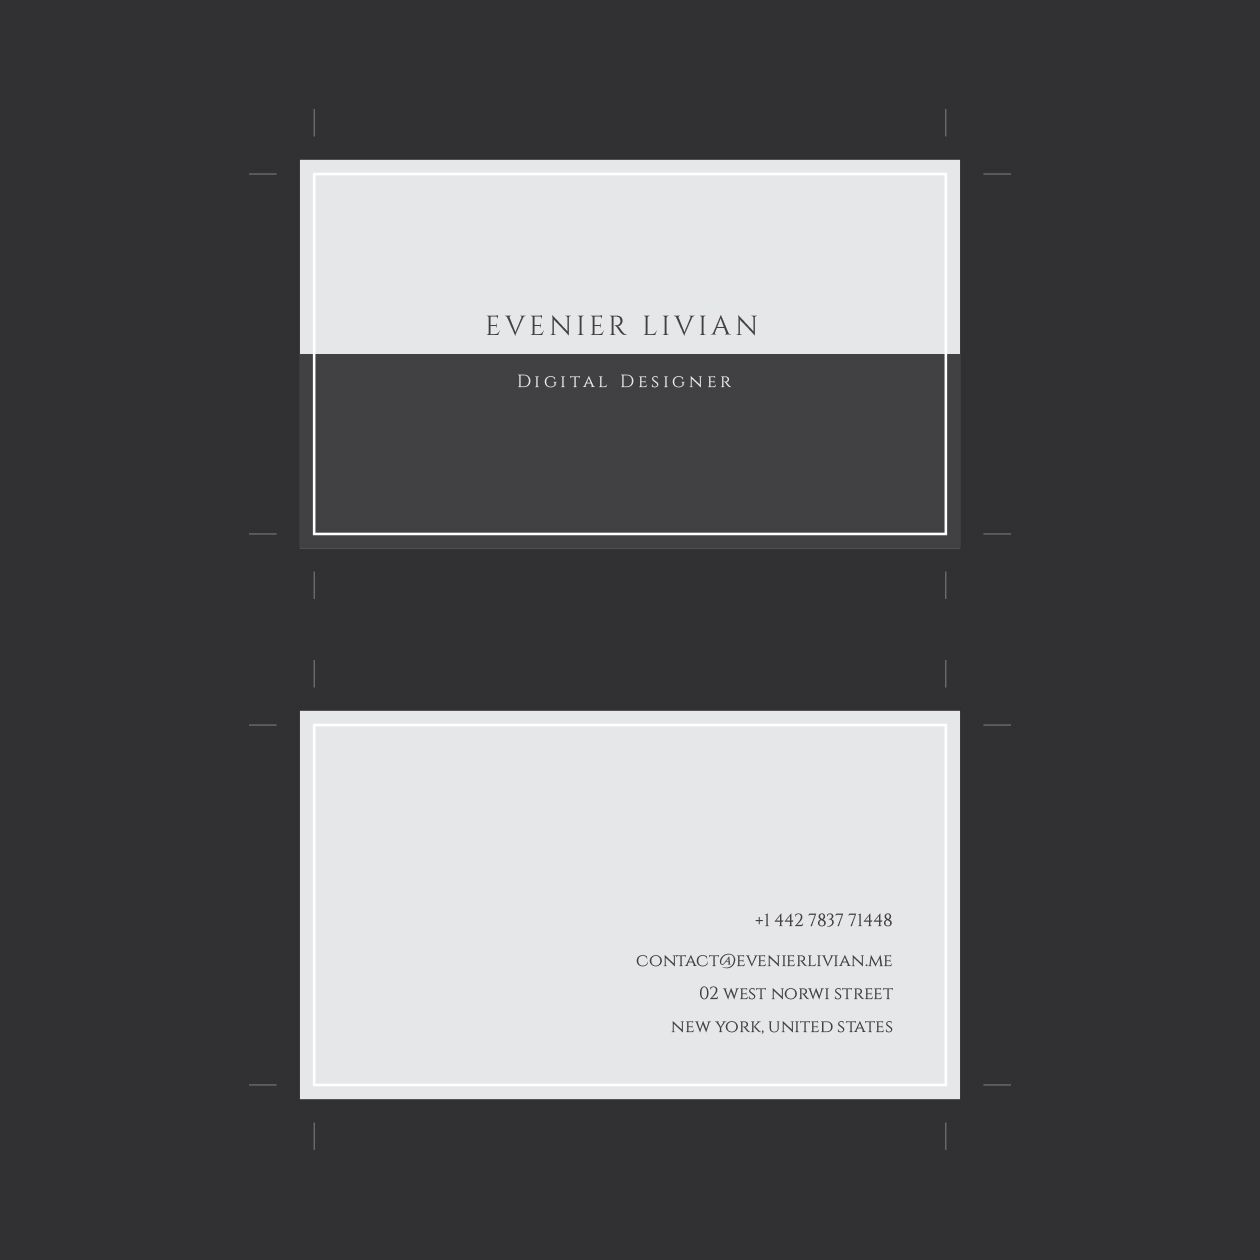 极简主义风格企业名片设计模板 Minimal Business Card Template插图(2)